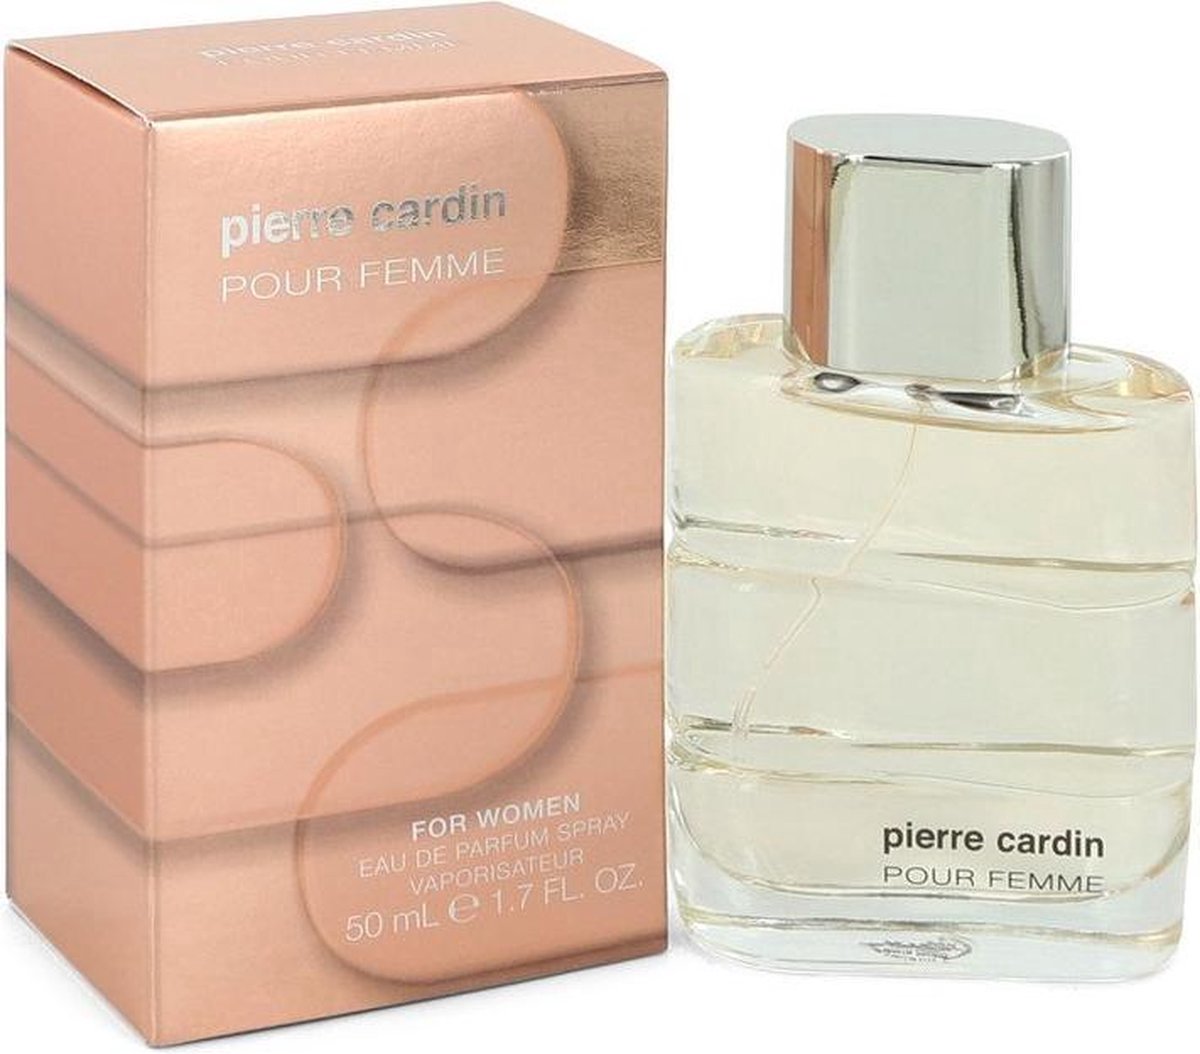 Pierre cardin Pour Femme For women eau de parfum 50 ml